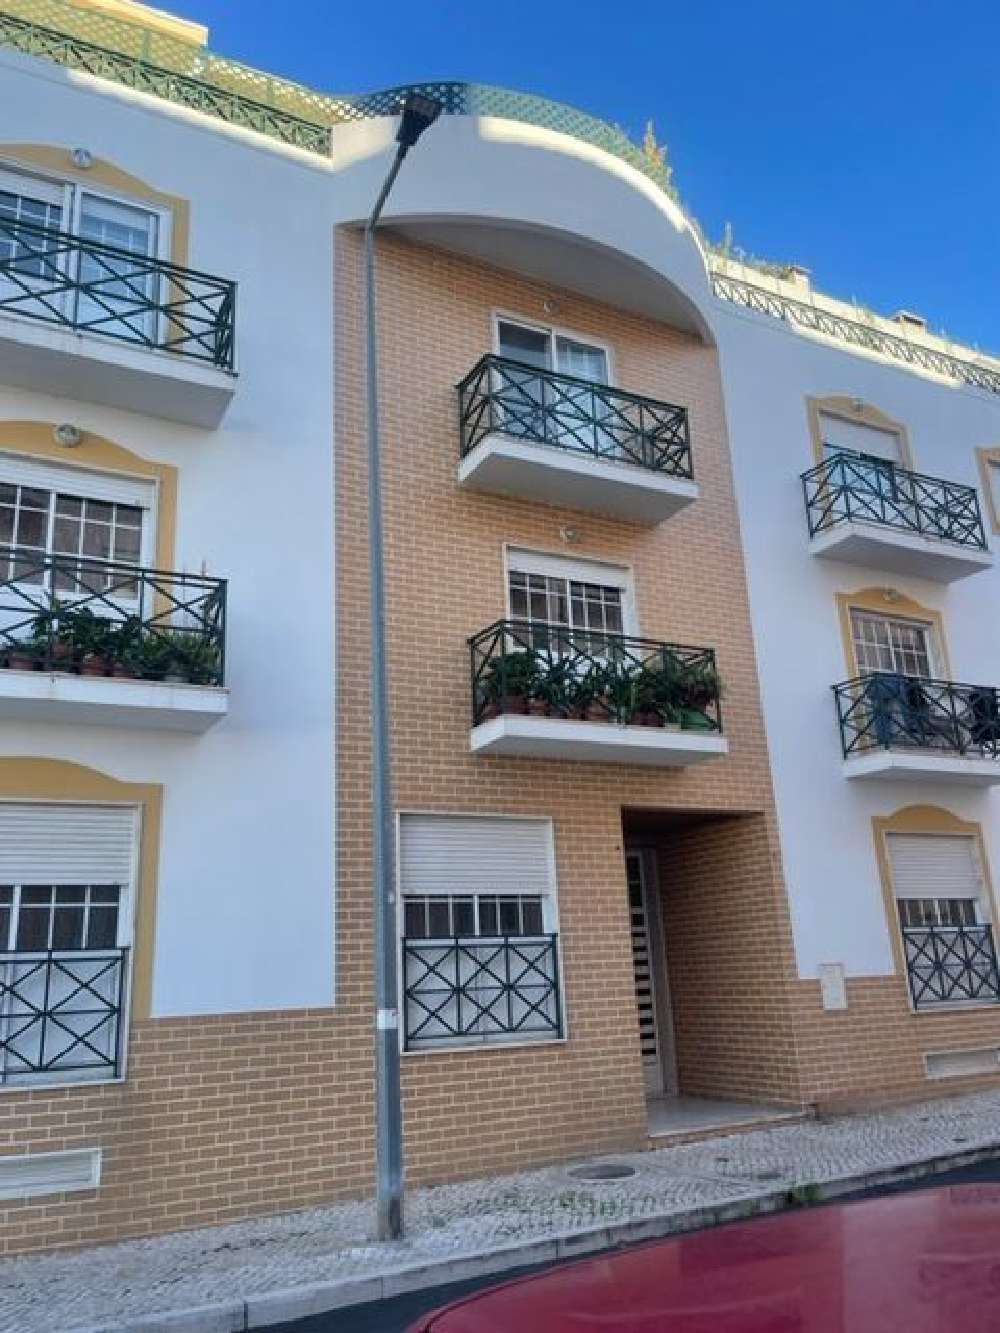 Pinhal Novo Palmela apartamento foto #request.properties.id#